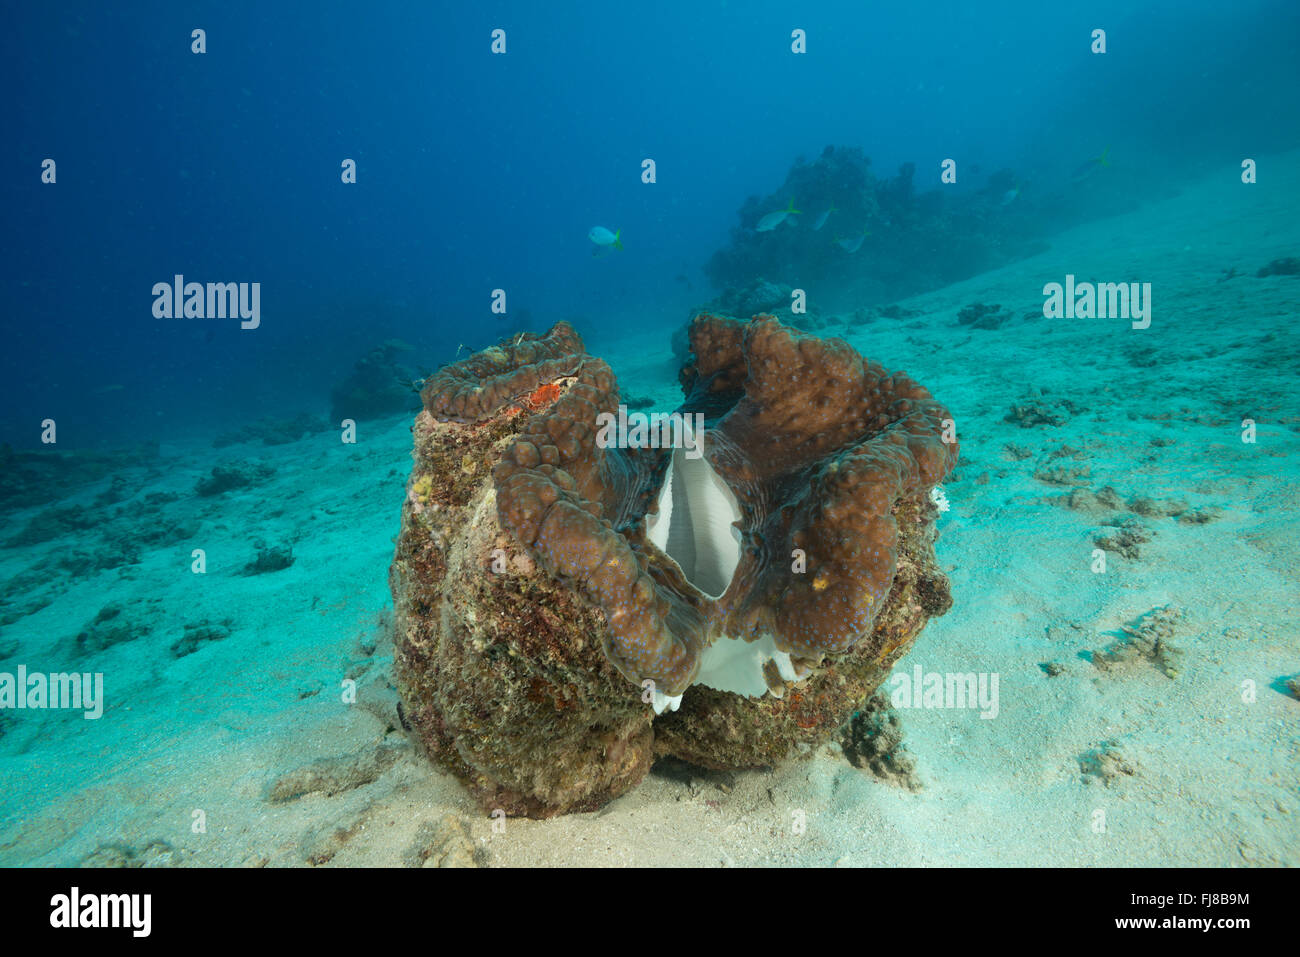 Riesenmuschel (Tridacna Gigas) im Riff.  In der Mündung Riffe gab es sehr viele große gesunde Riesenmuscheln. Stockfoto